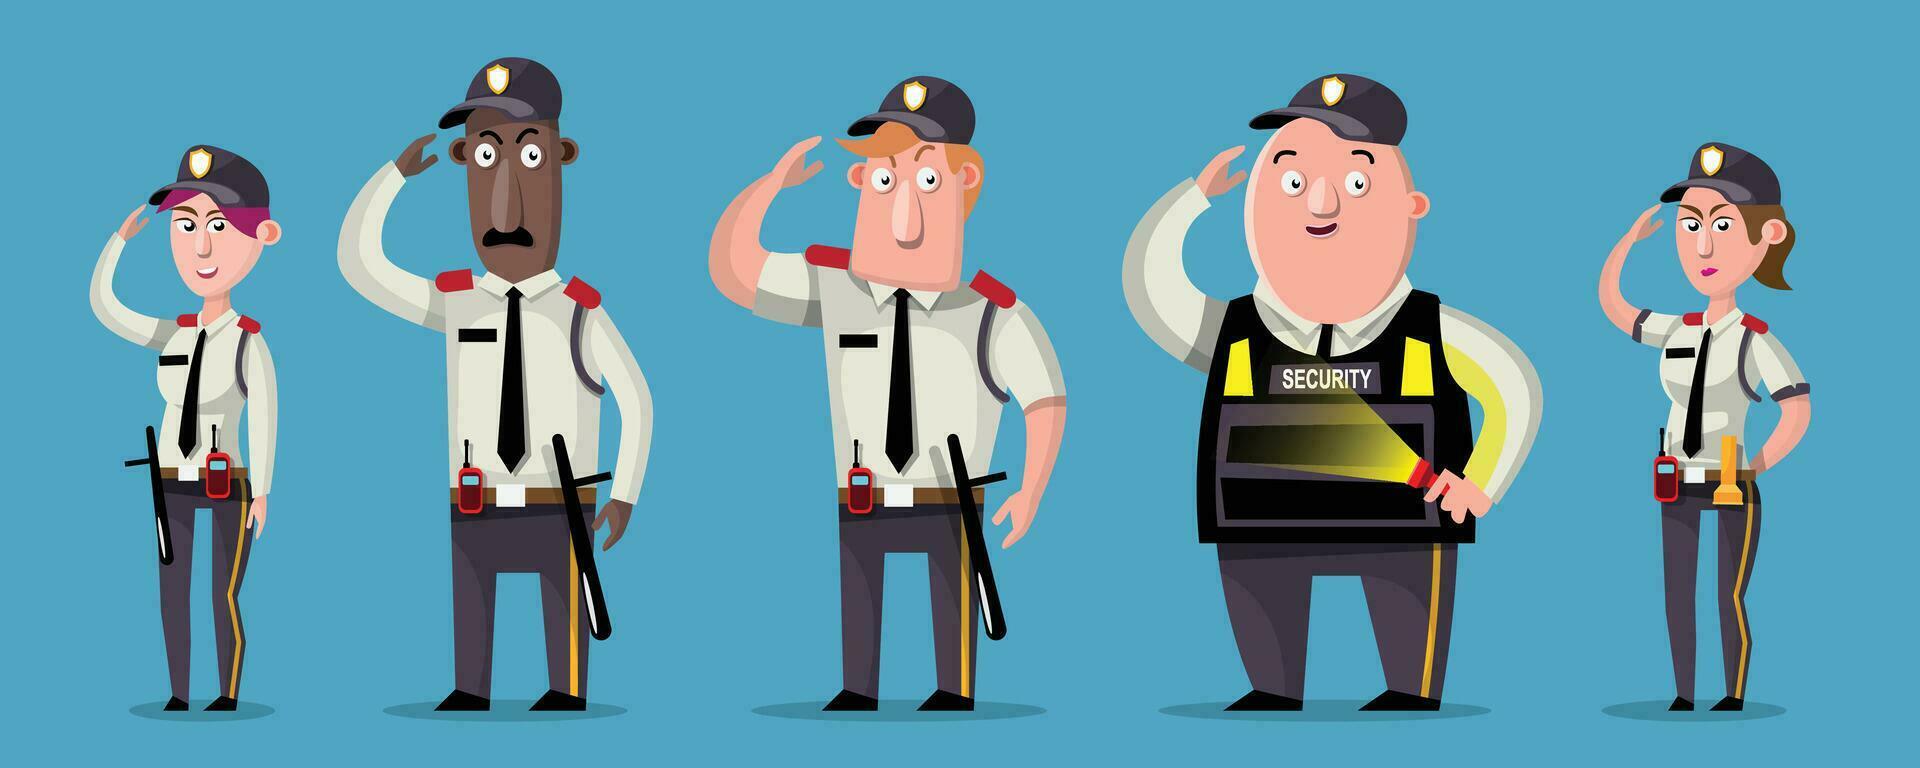 segurança equipe dentro mesmo uniforme, personagem desenho animado estilo. vetor